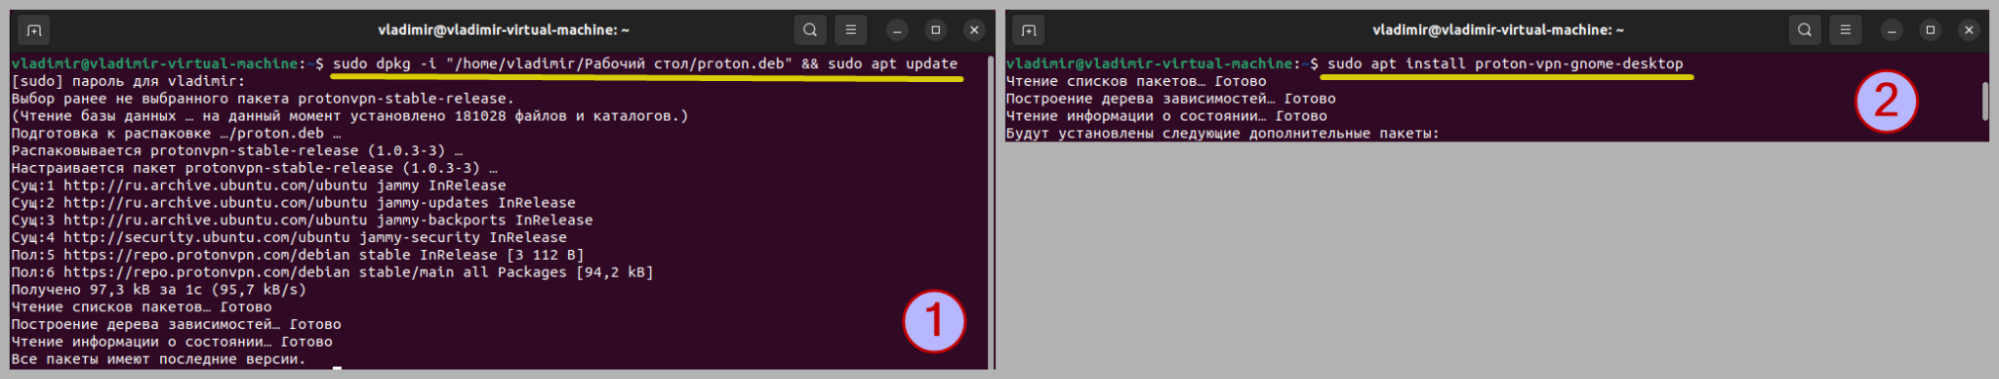 Команды добавления репозитория и установки приложения Proton VPN для Linux Ubuntu.